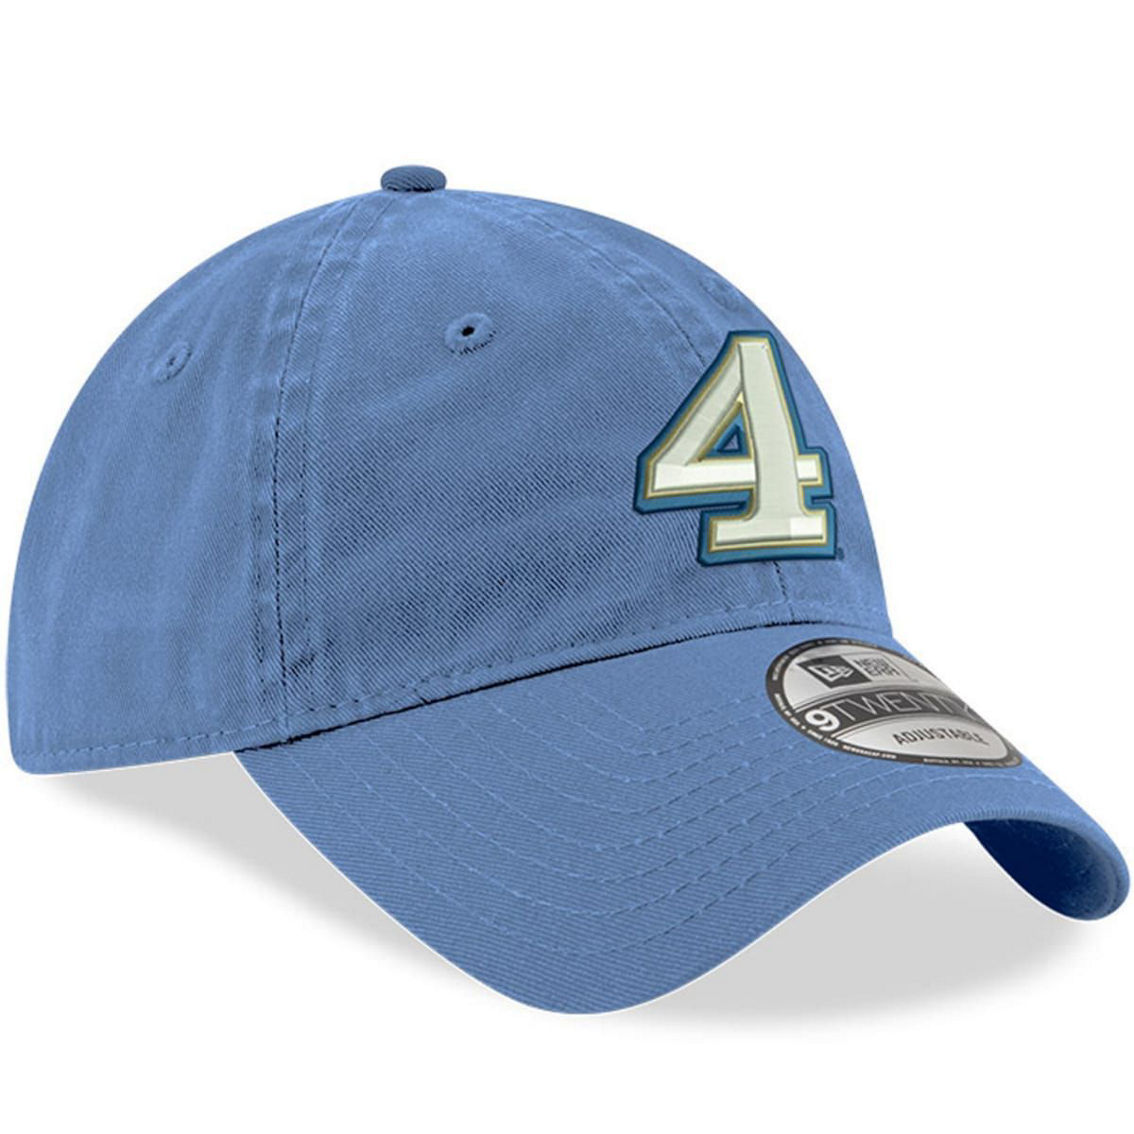 New Era Men's Powder Blue Kevin Harvick Enzyme Washed 9TWENTY Adjustable Hat - Image 4 of 4